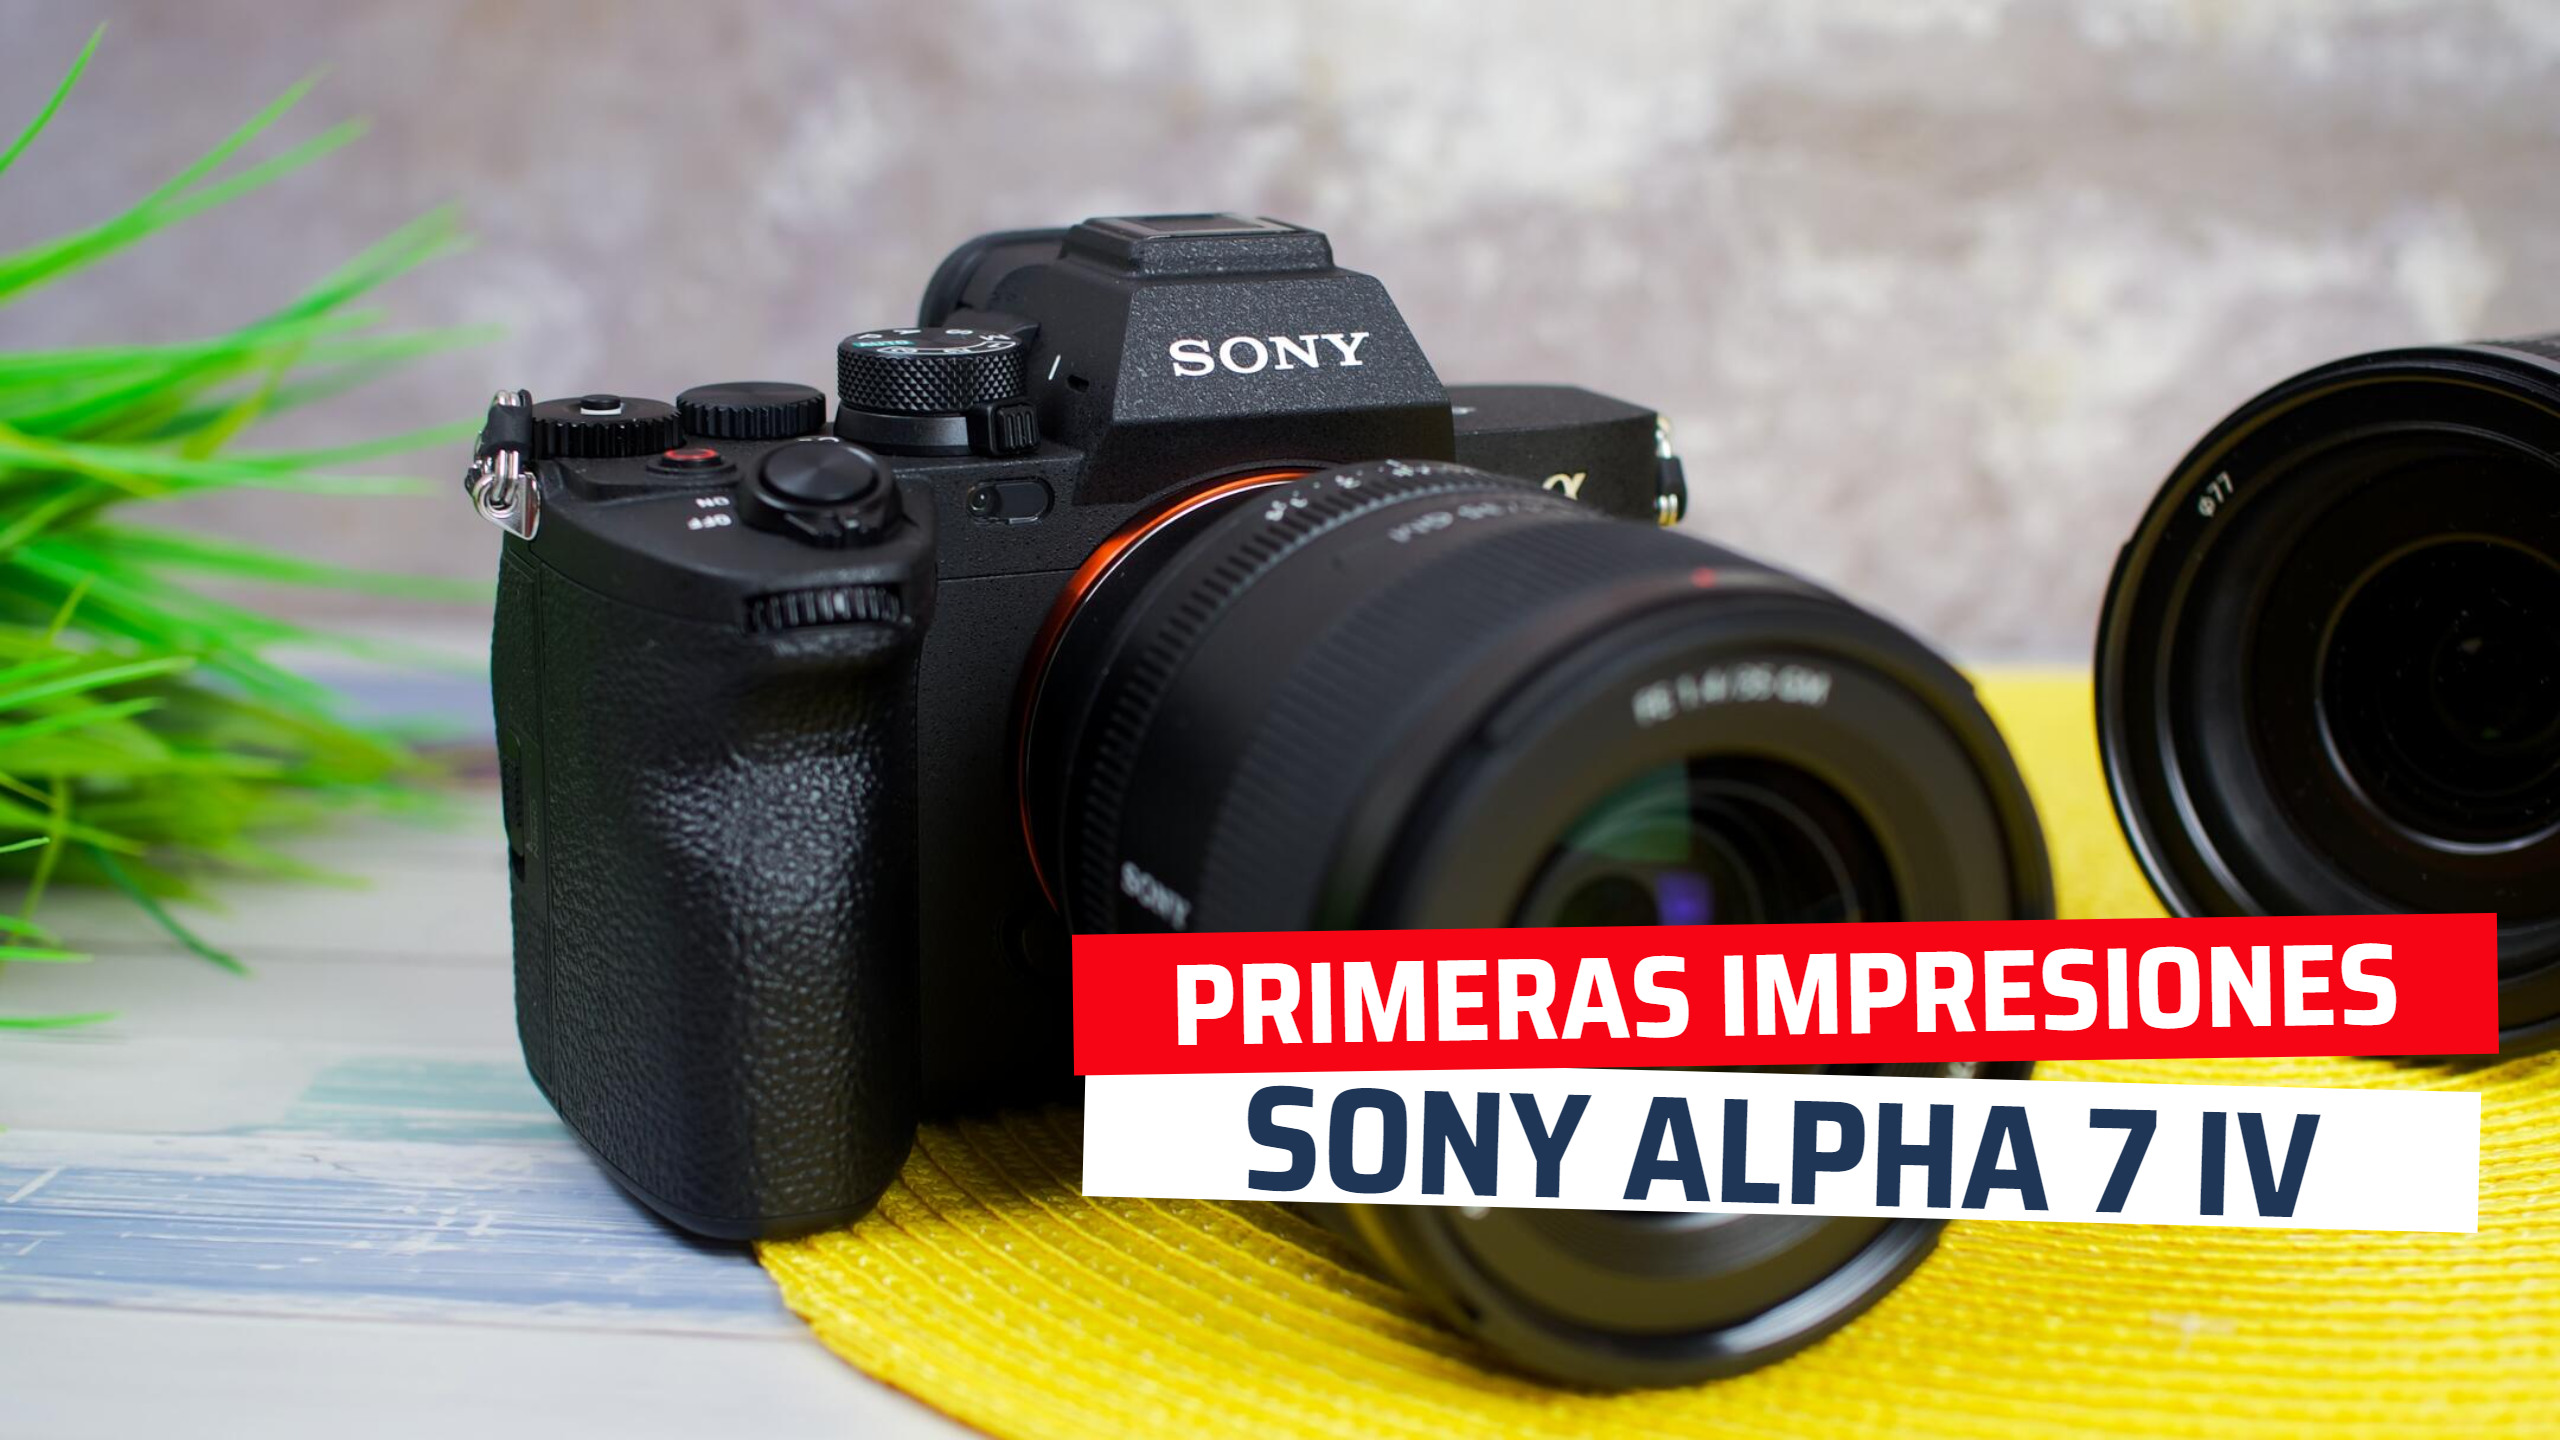 Sony Alpha 7 IV, primeras impresiones de la nueva cámara Full